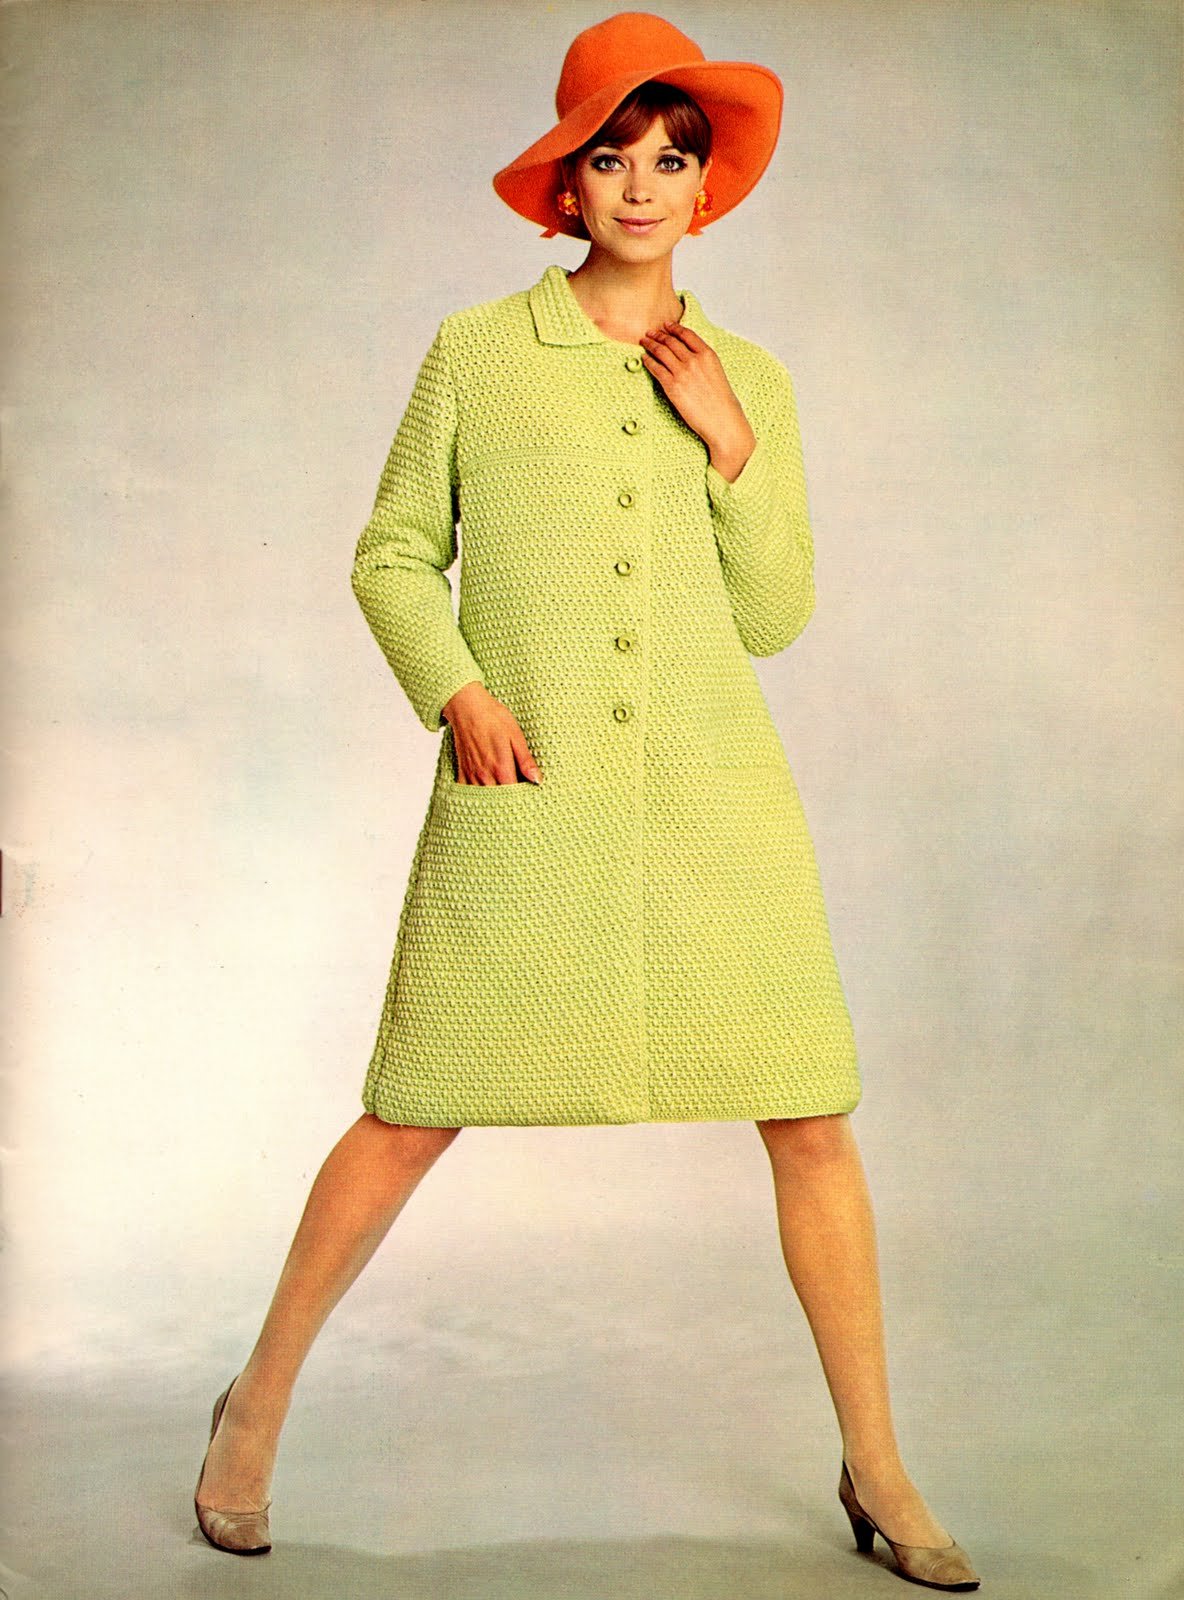 Мода 60-х